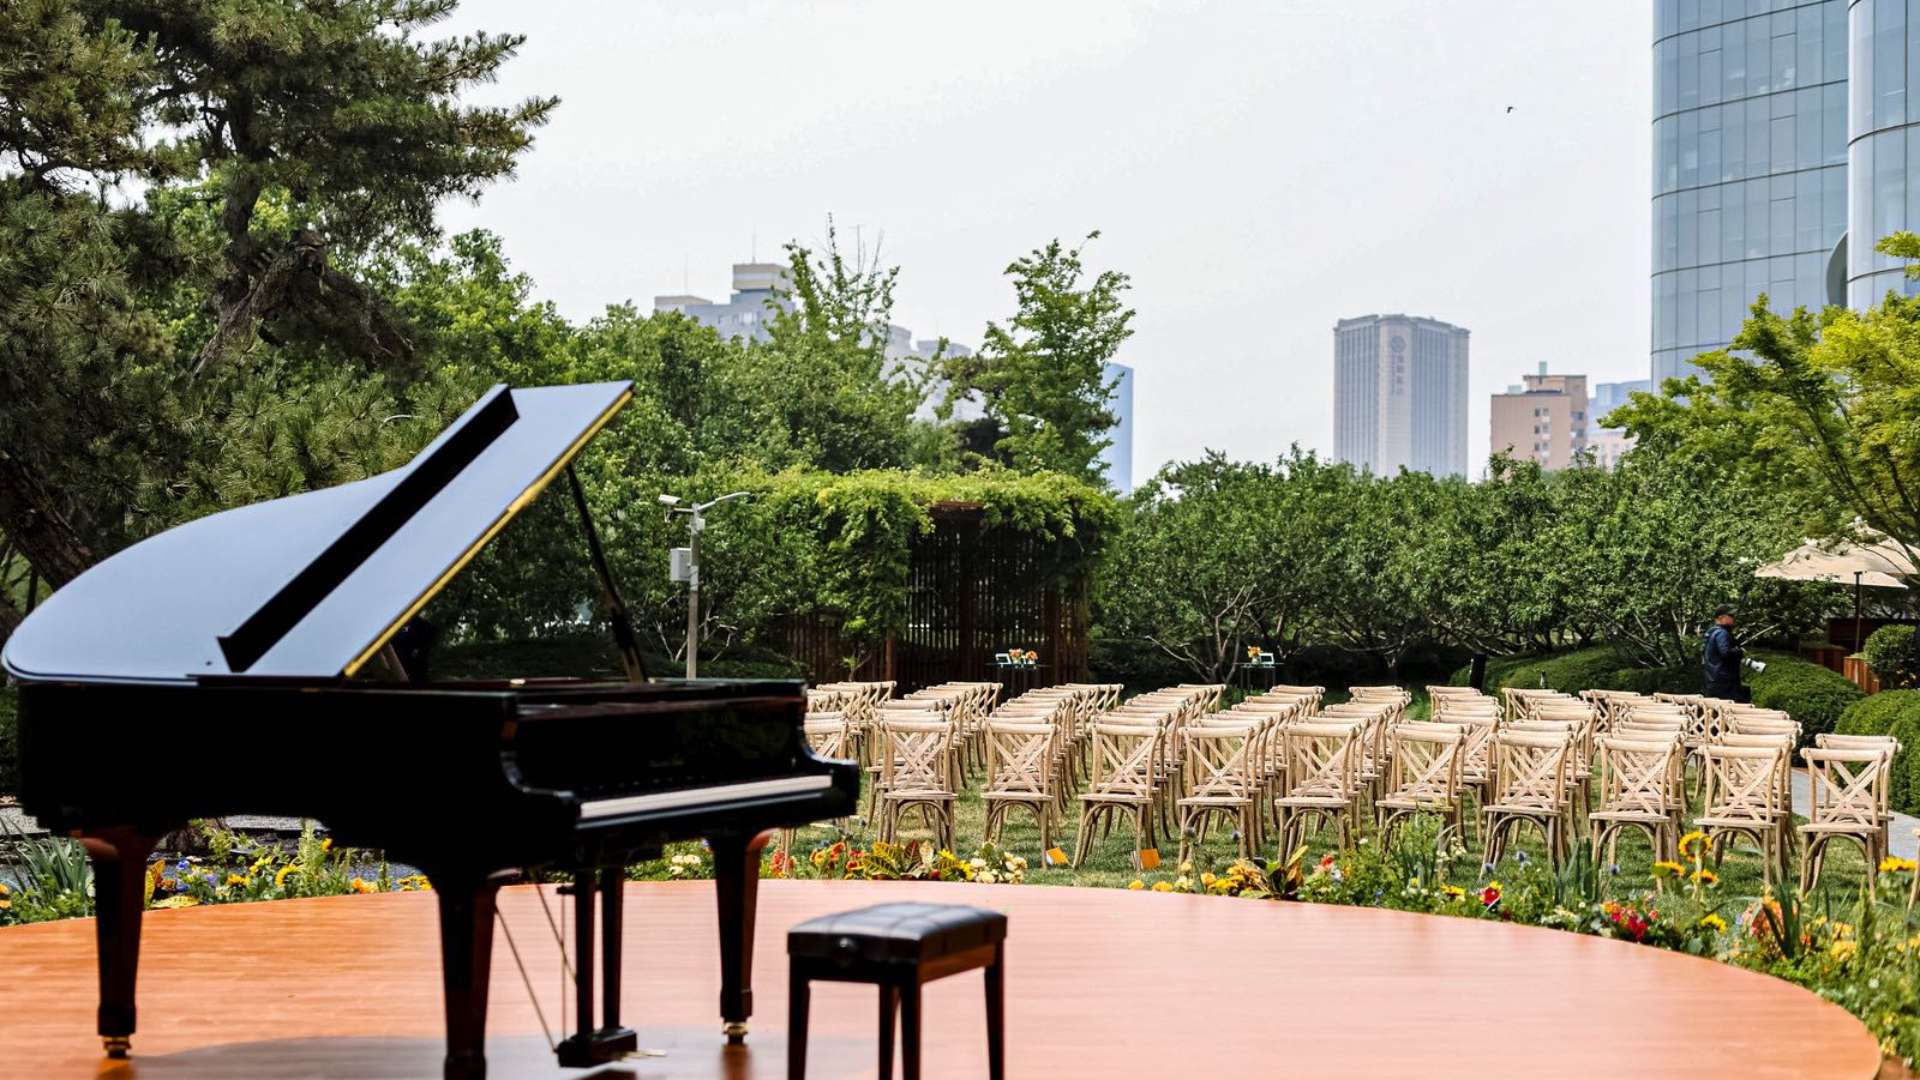 Bulgari Hotel Beijing Whats On Garden Party